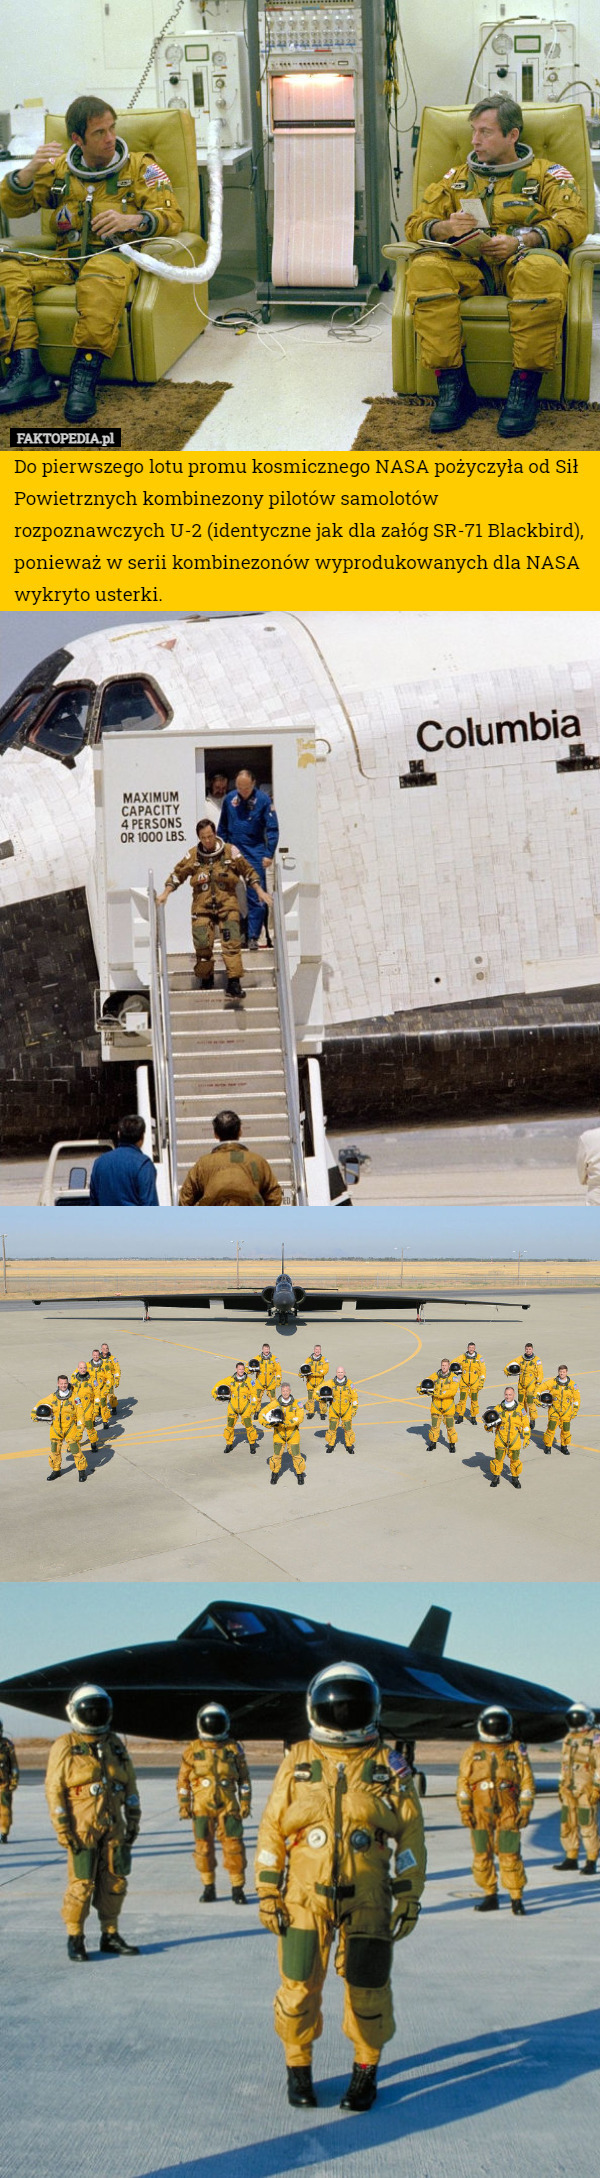 Do pierwszego lotu promu kosmicznego NASA pożyczyła od Sił Powietrznych kombinezony pilotów samolotów rozpoznawczych U-2 (identyczne jak dla załóg SR-71 Blackbird), ponieważ w serii kombinezonów wyprodukowanych dla NASA wykryto usterki. 